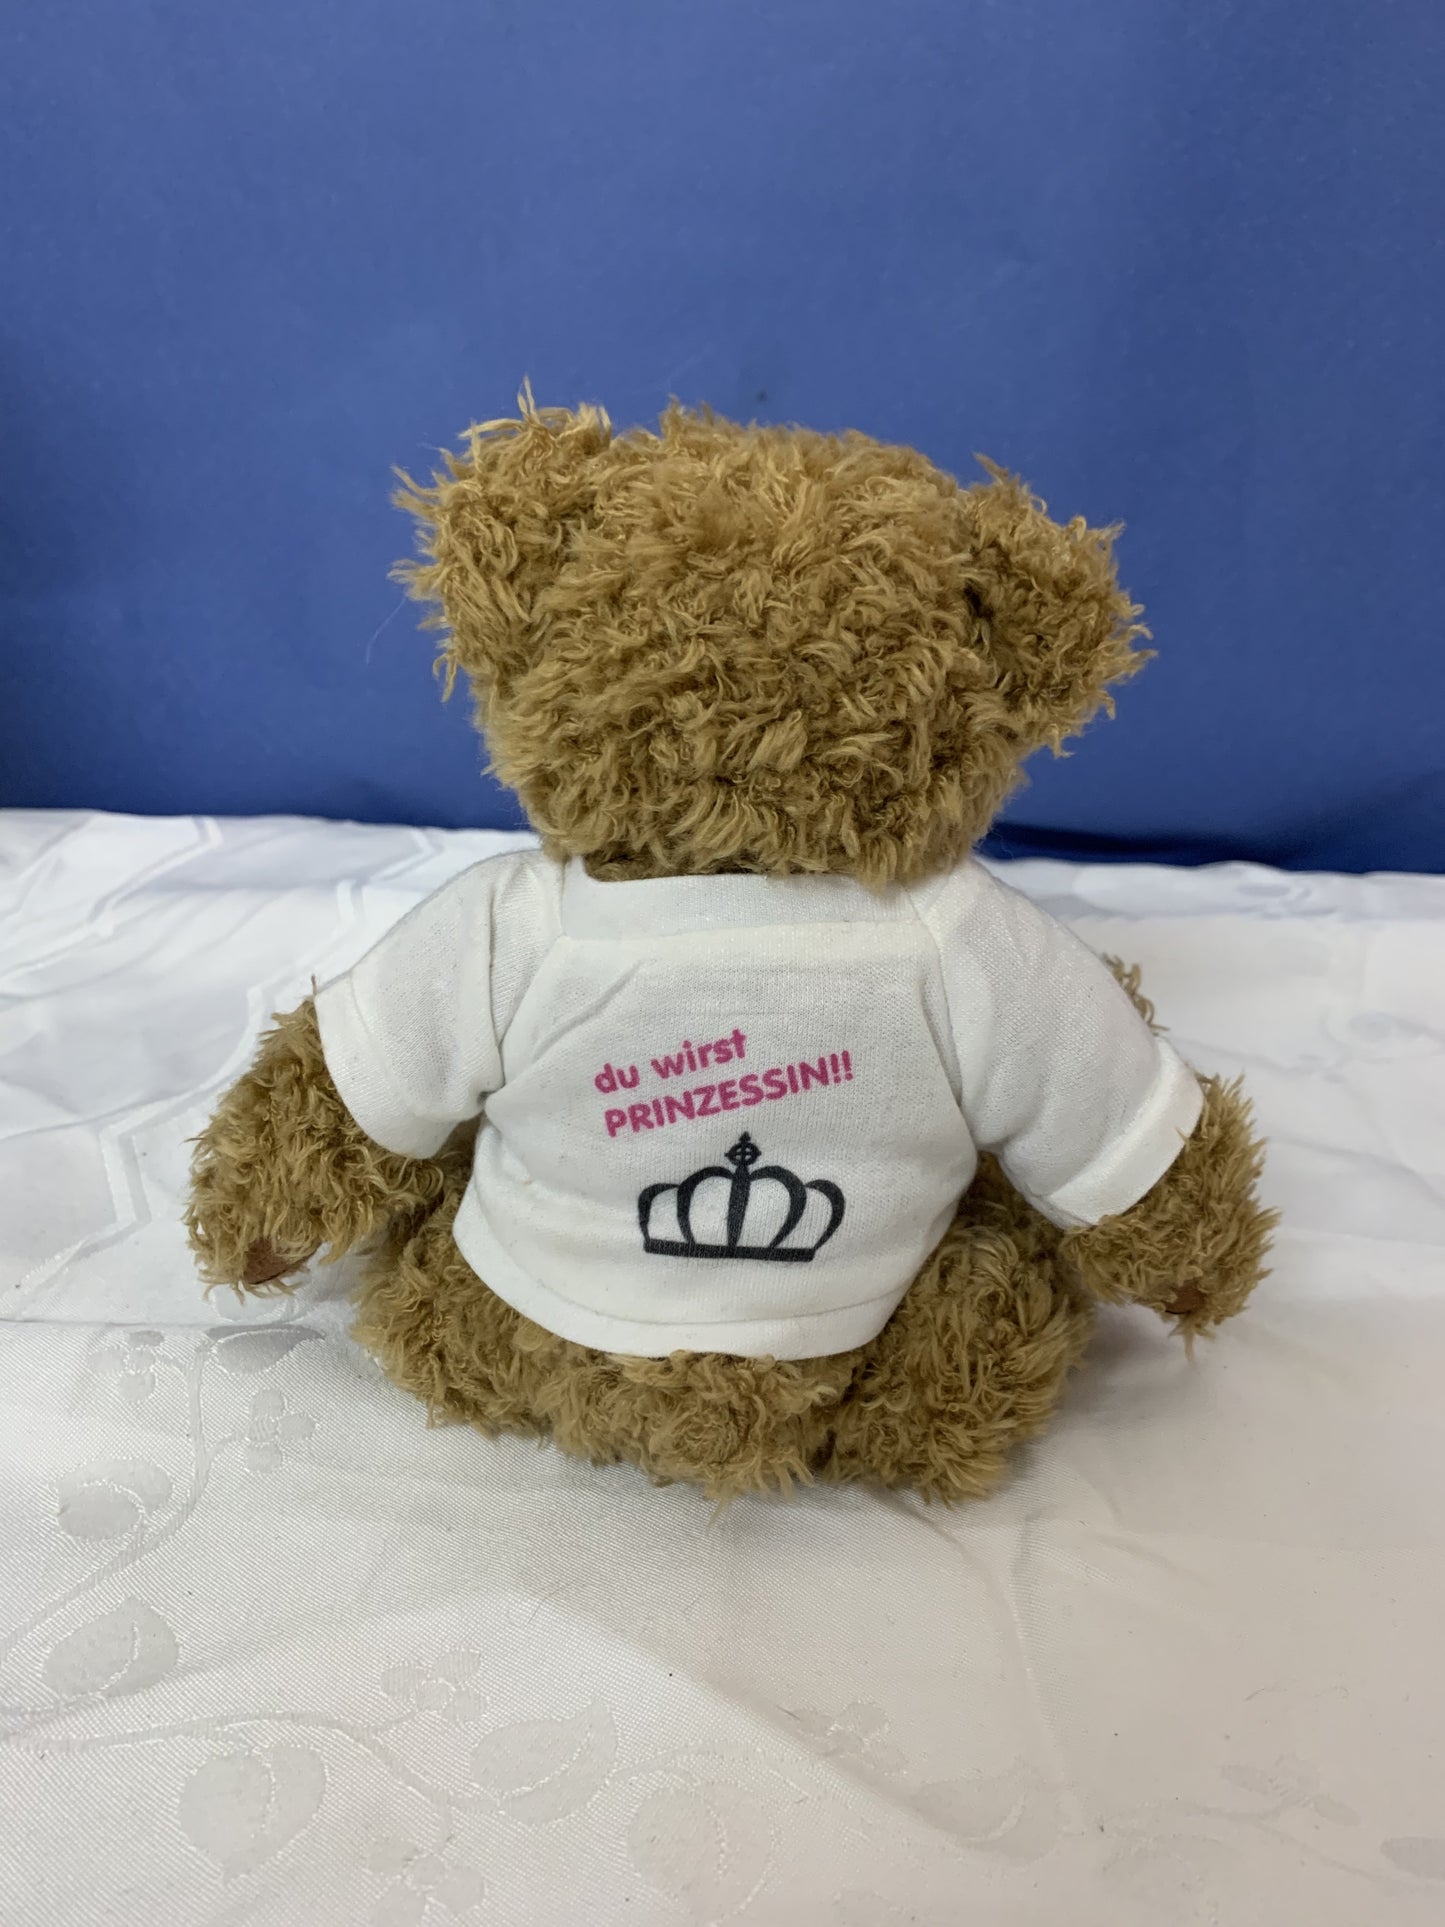 Teddybär mit T-Shirt "du wirst Prinzessin!"